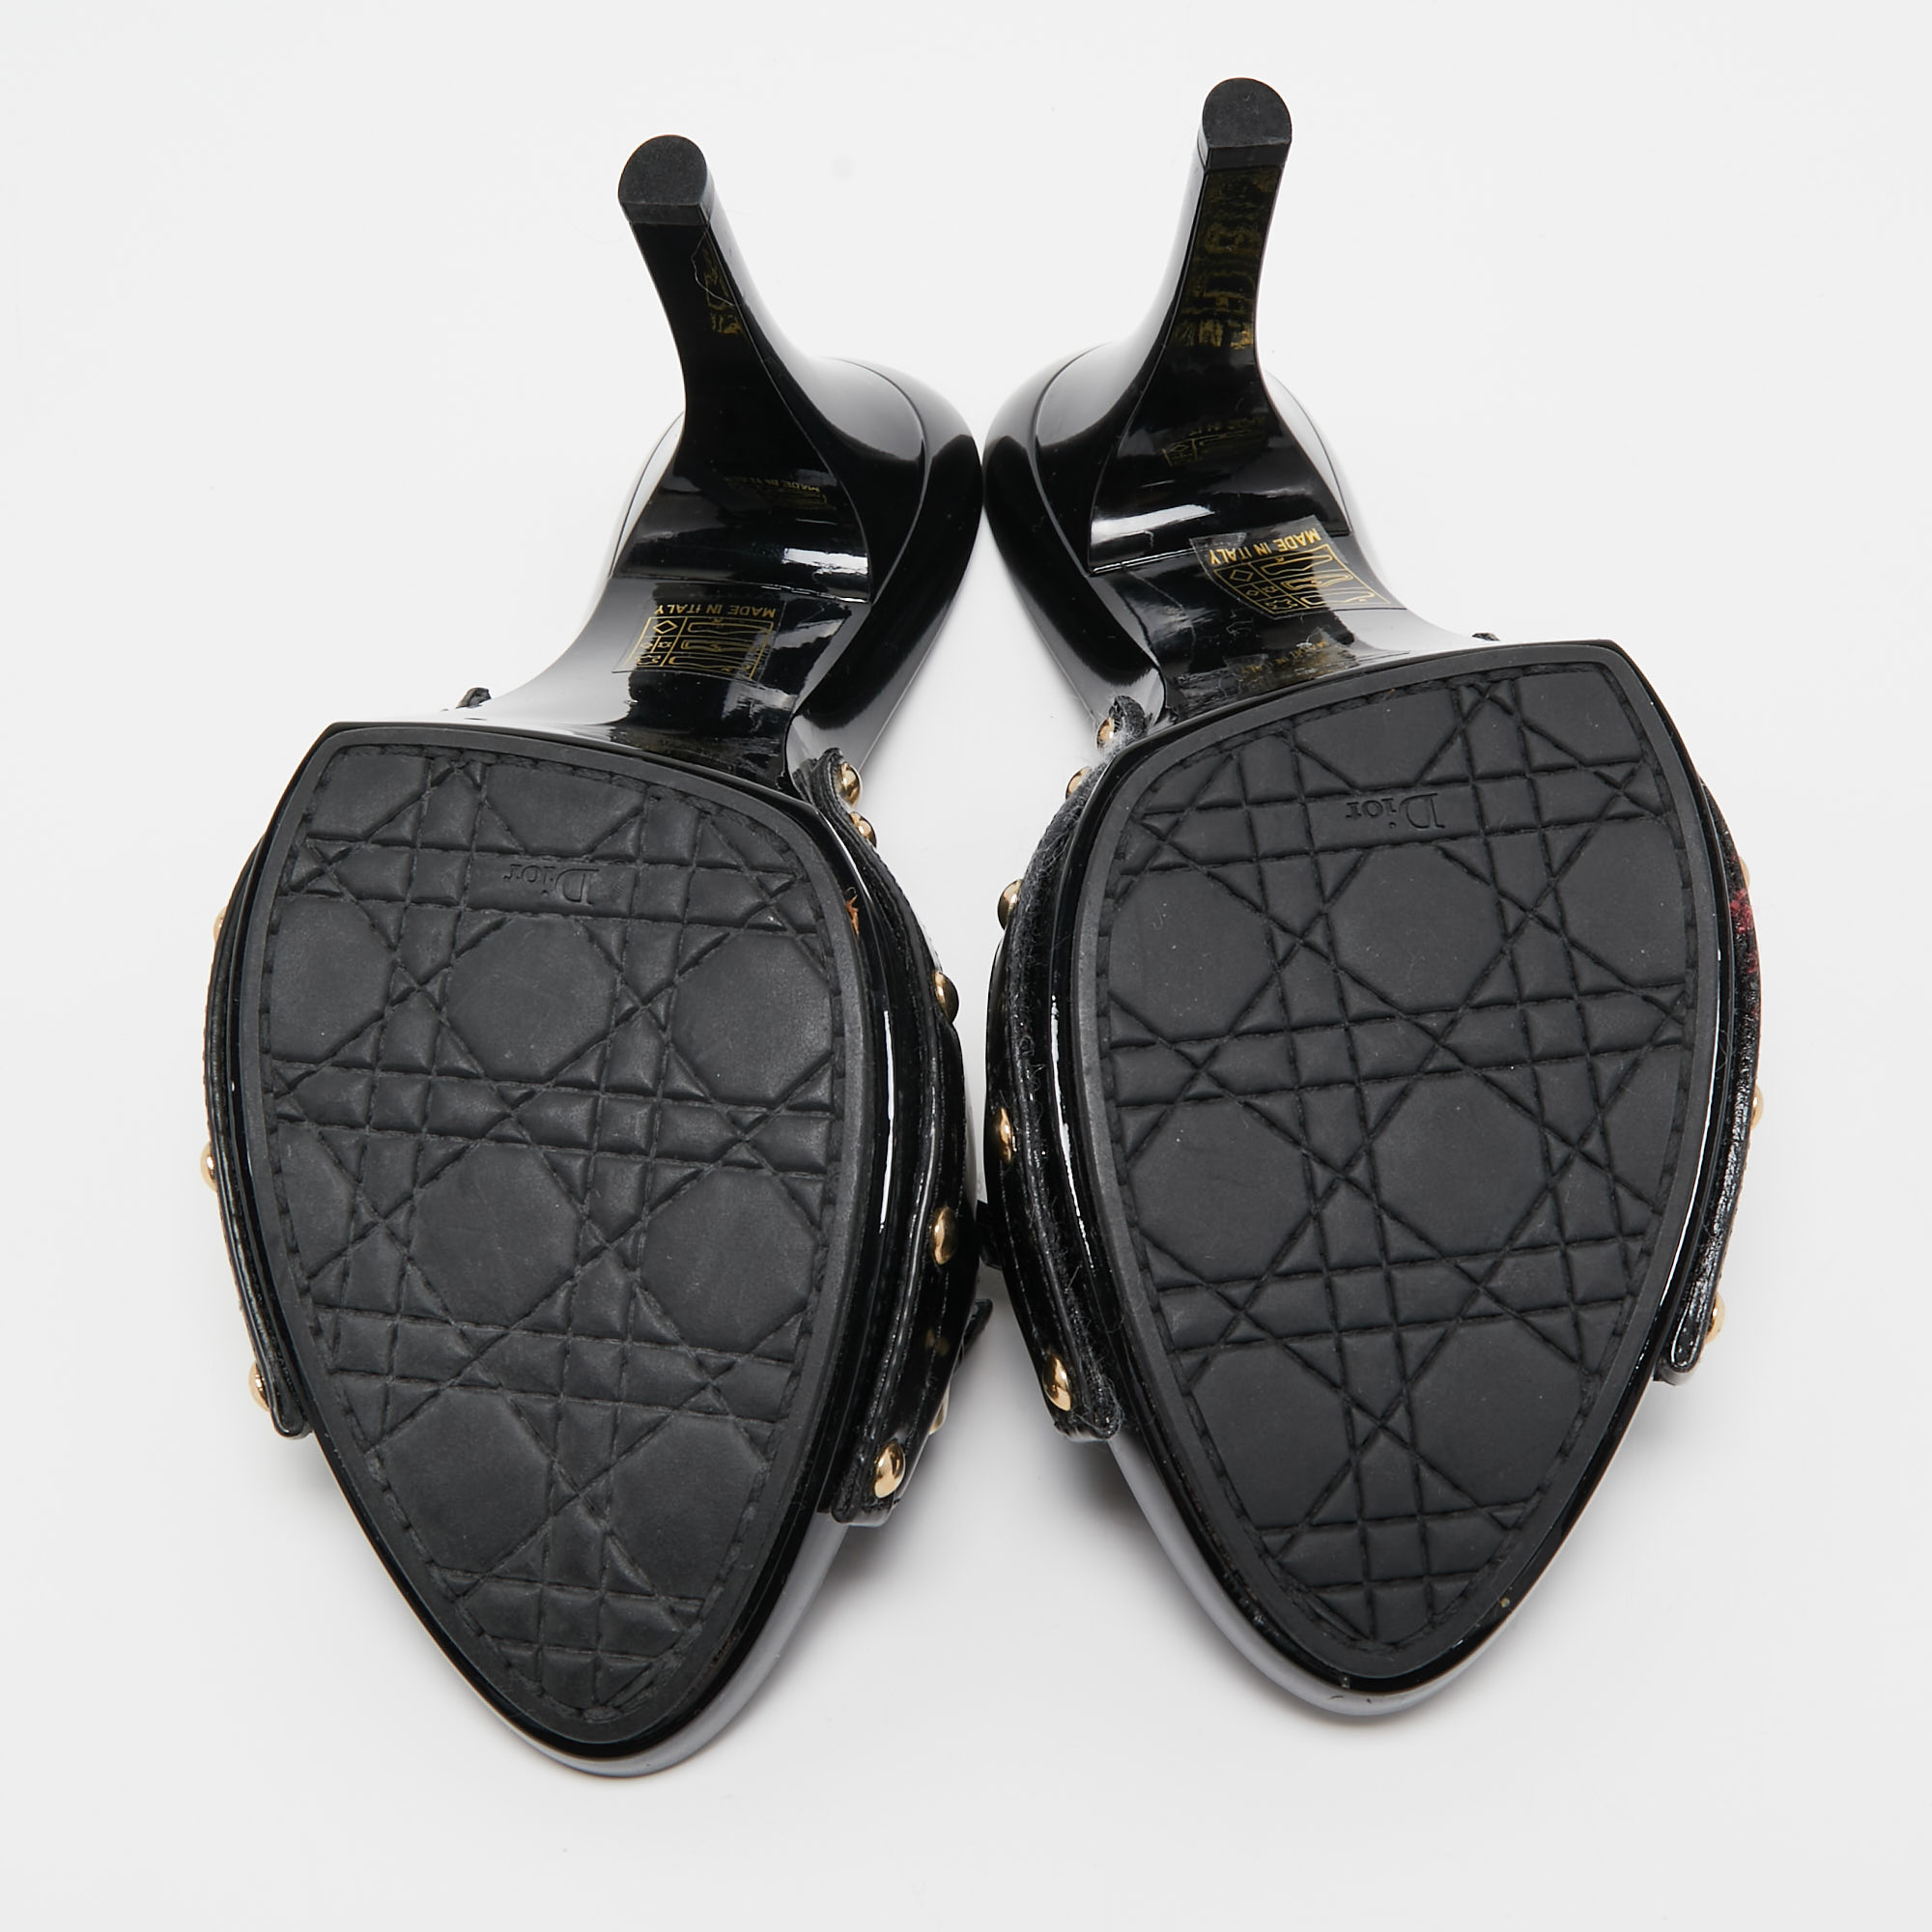 Dior Black Patent Slide Sandals Size 39